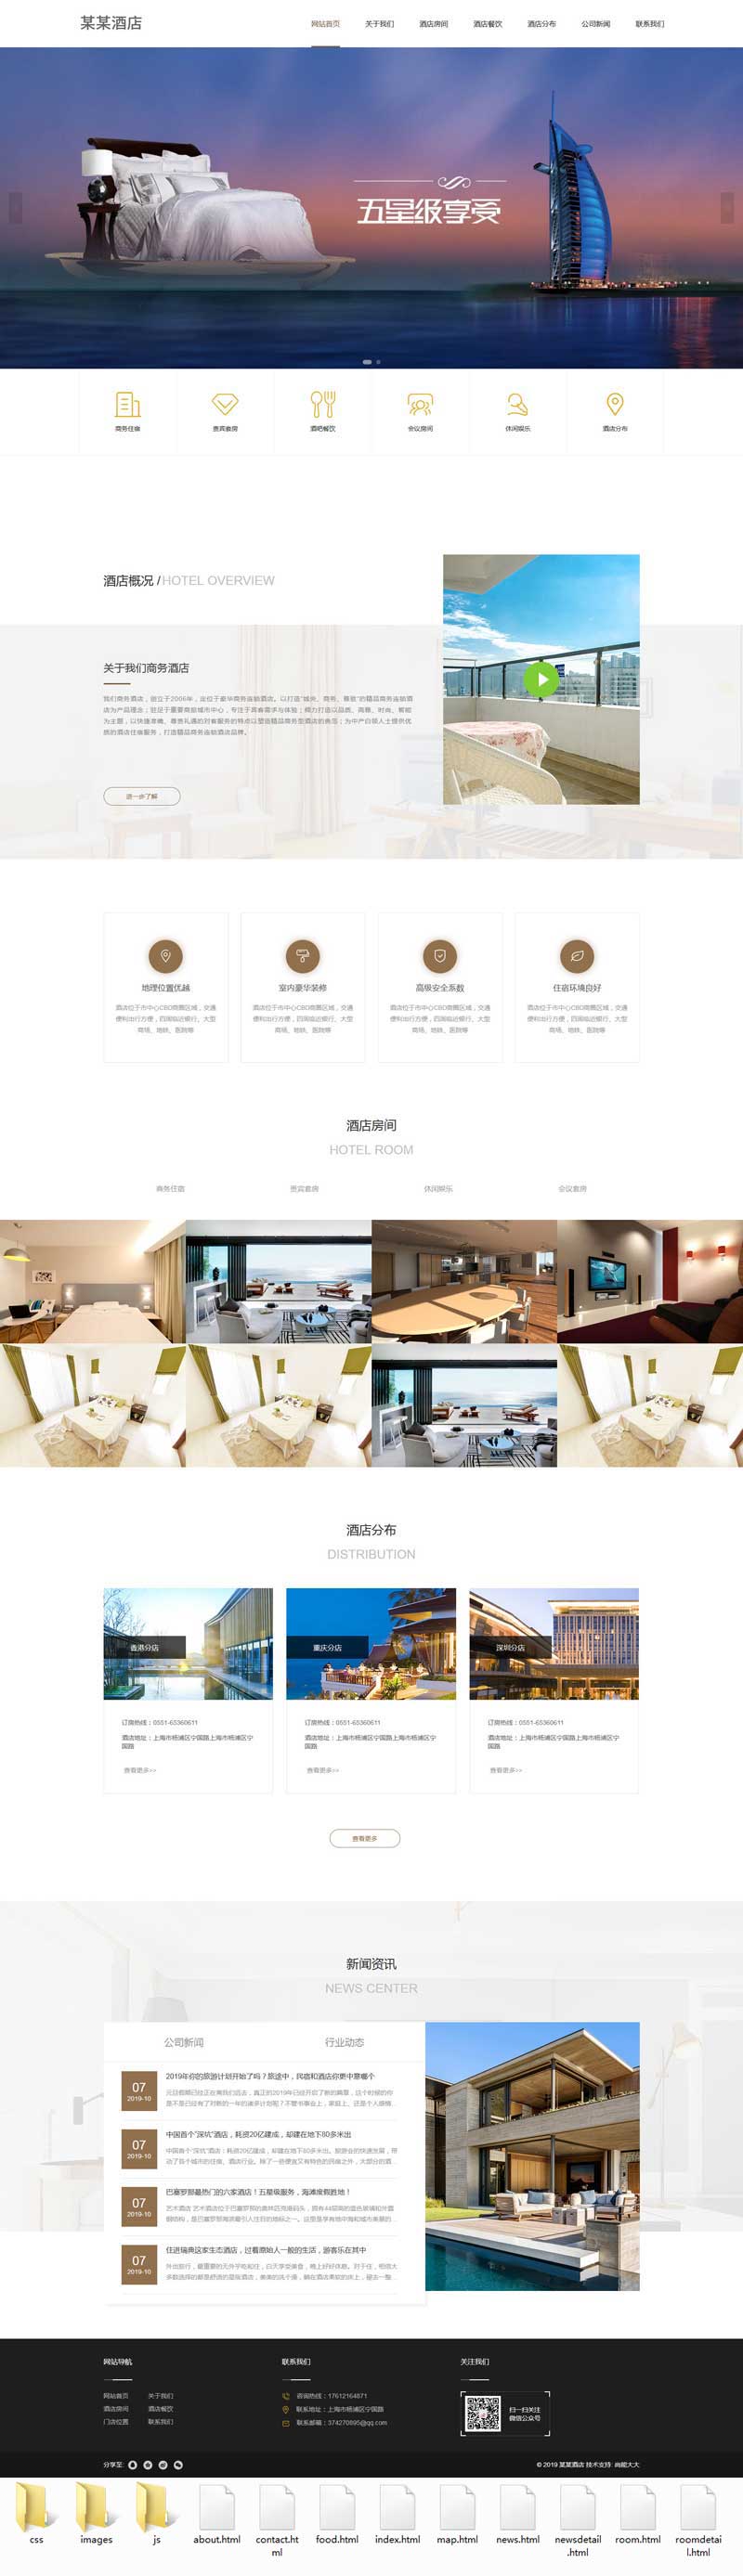 高端大气星级酒店展示网站静态模板